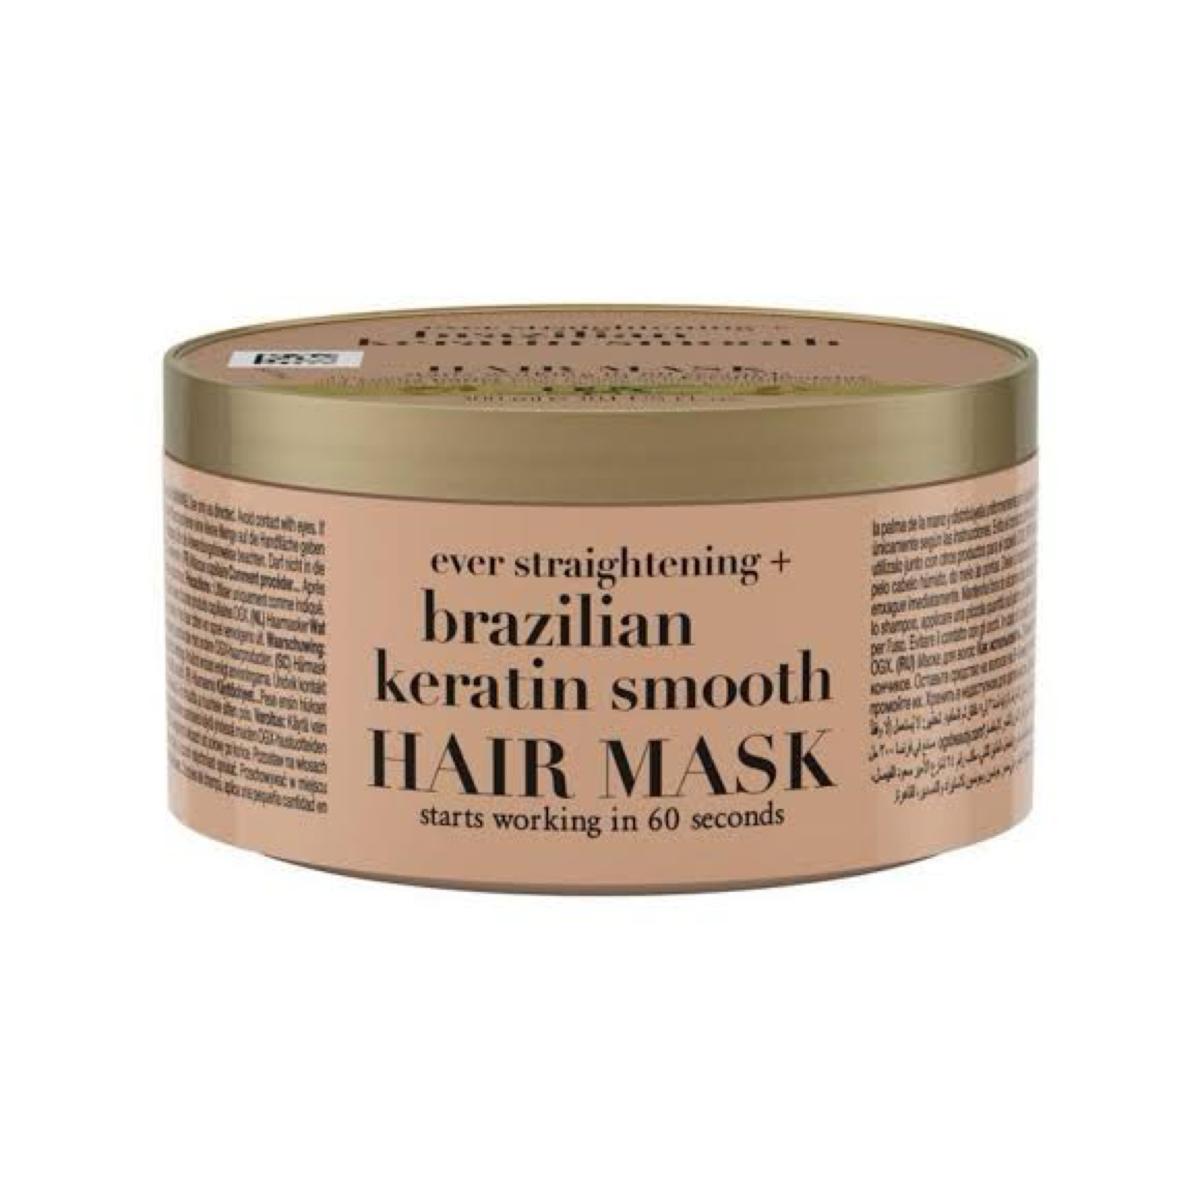 ماسک مو کراتین برزیلی - Brazilian keratin smooth hair mask